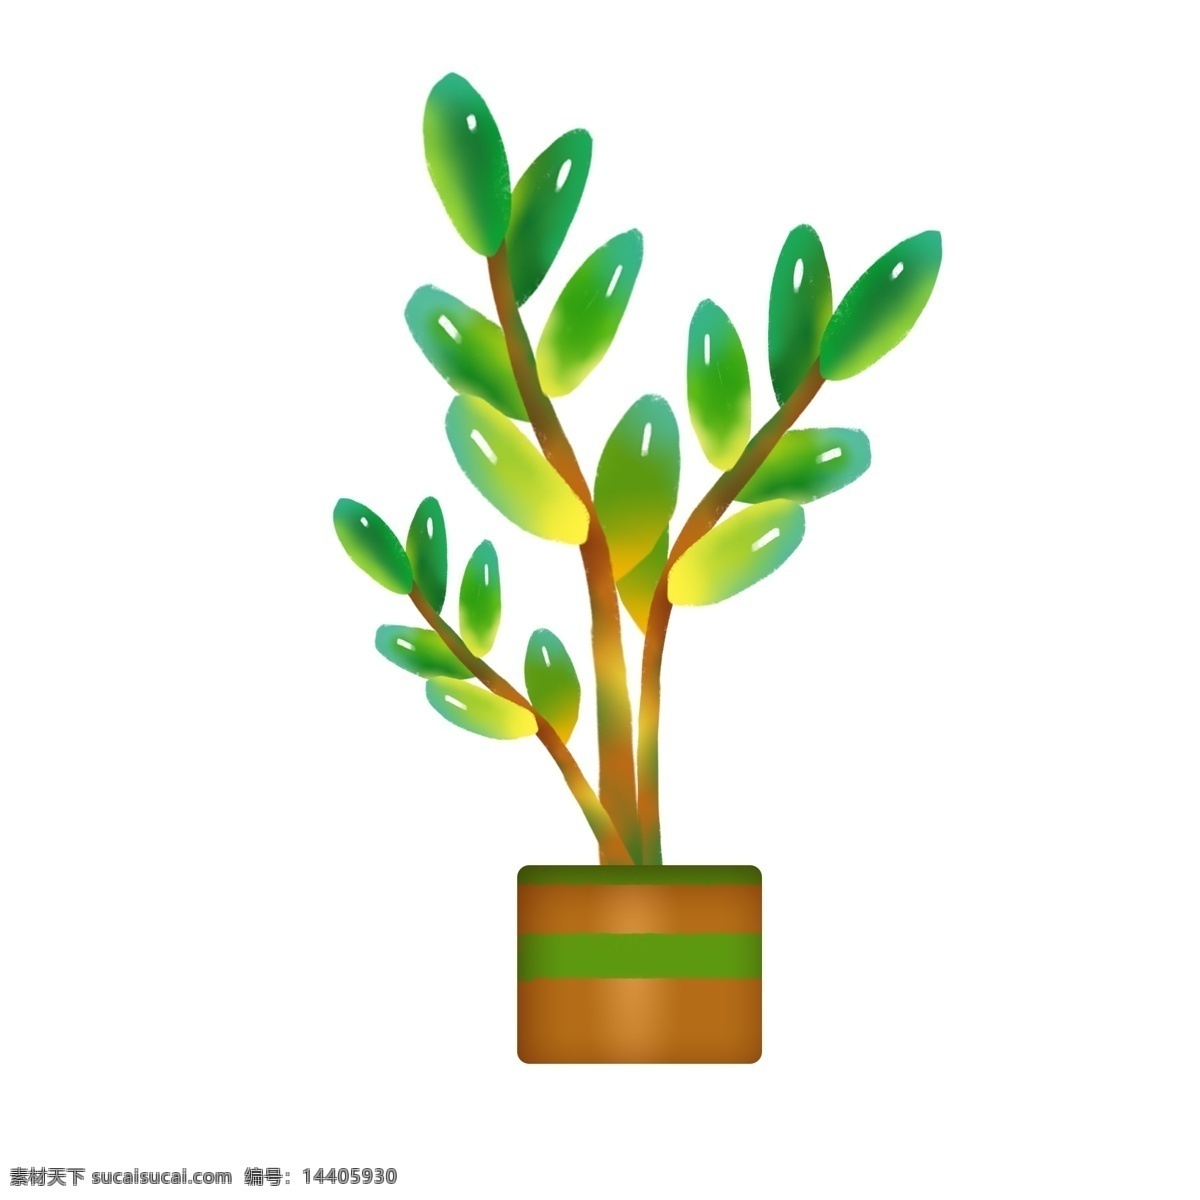 装饰 绿色植物 插画 装饰的植物 卡通插画 绿植插画 植物插画 枝条插画 漂亮的盆栽